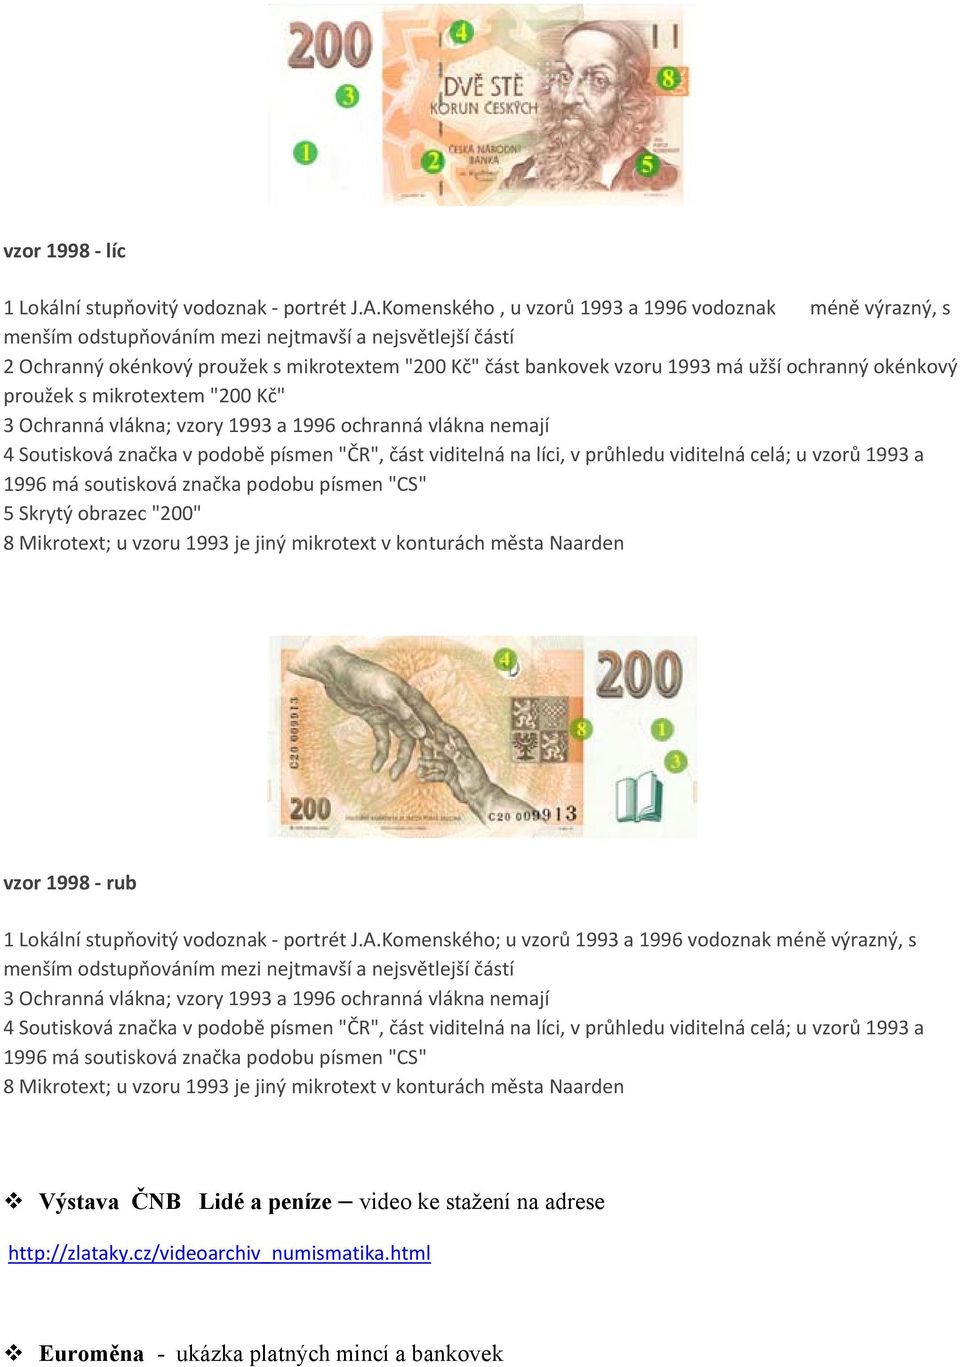 ochranný okénkový proužek s mikrotextem "200 Kč" 3 Ochranná vlákna; vzory 1993 a 1996 ochranná vlákna nemají 4 Soutisková značka v podobě písmen "ČR", část viditelná na líci, v průhledu viditelná